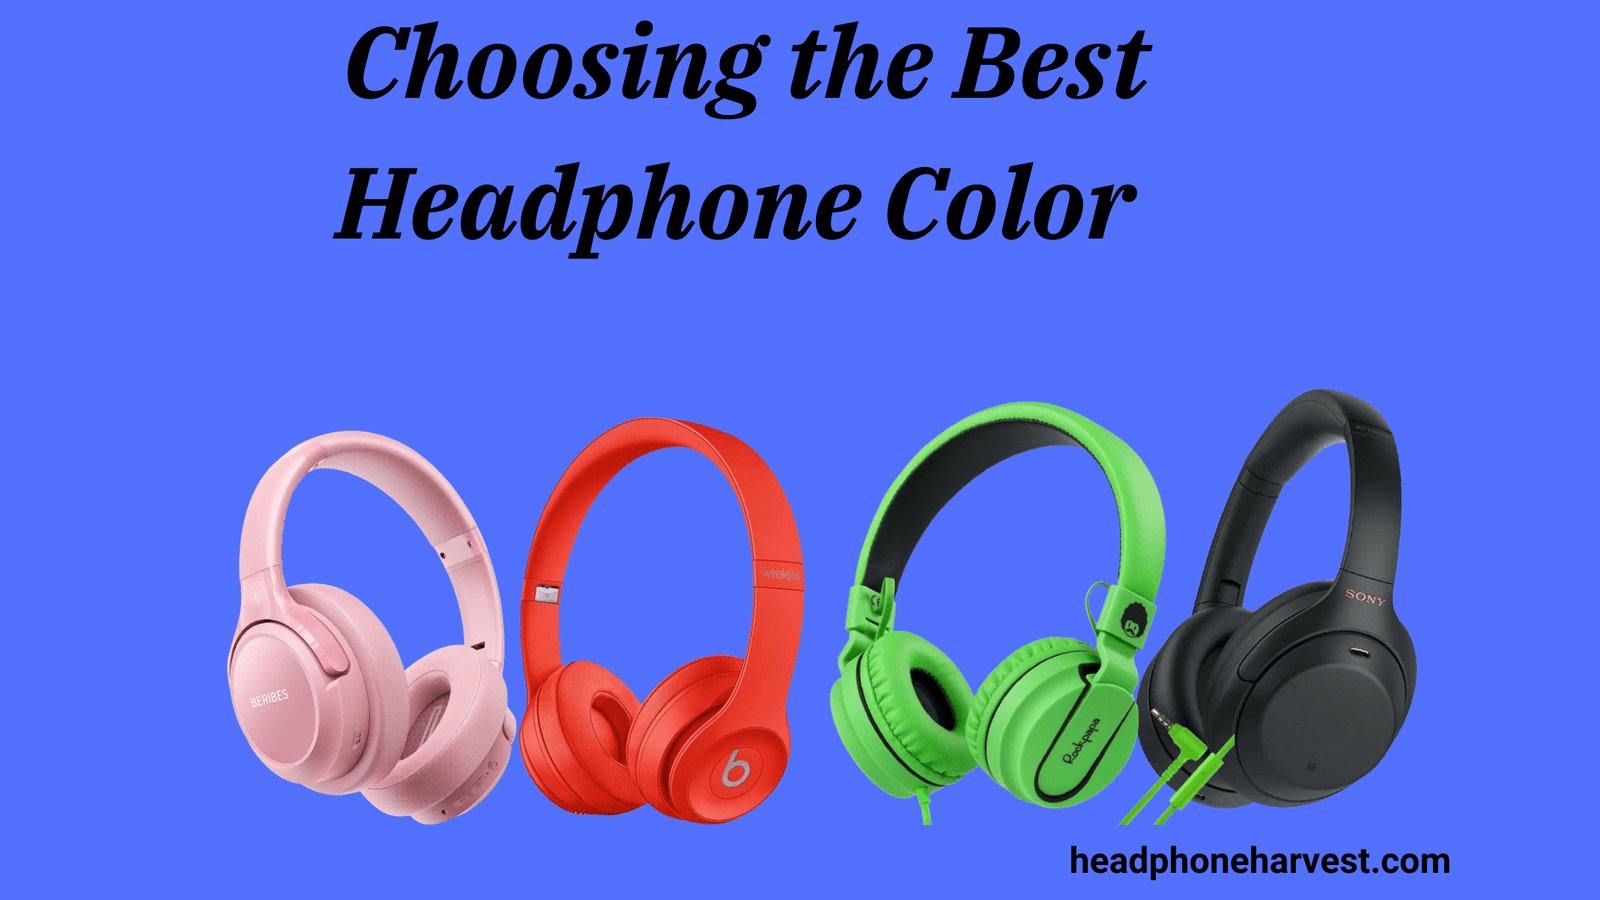 Choosing the Best Headphone Color